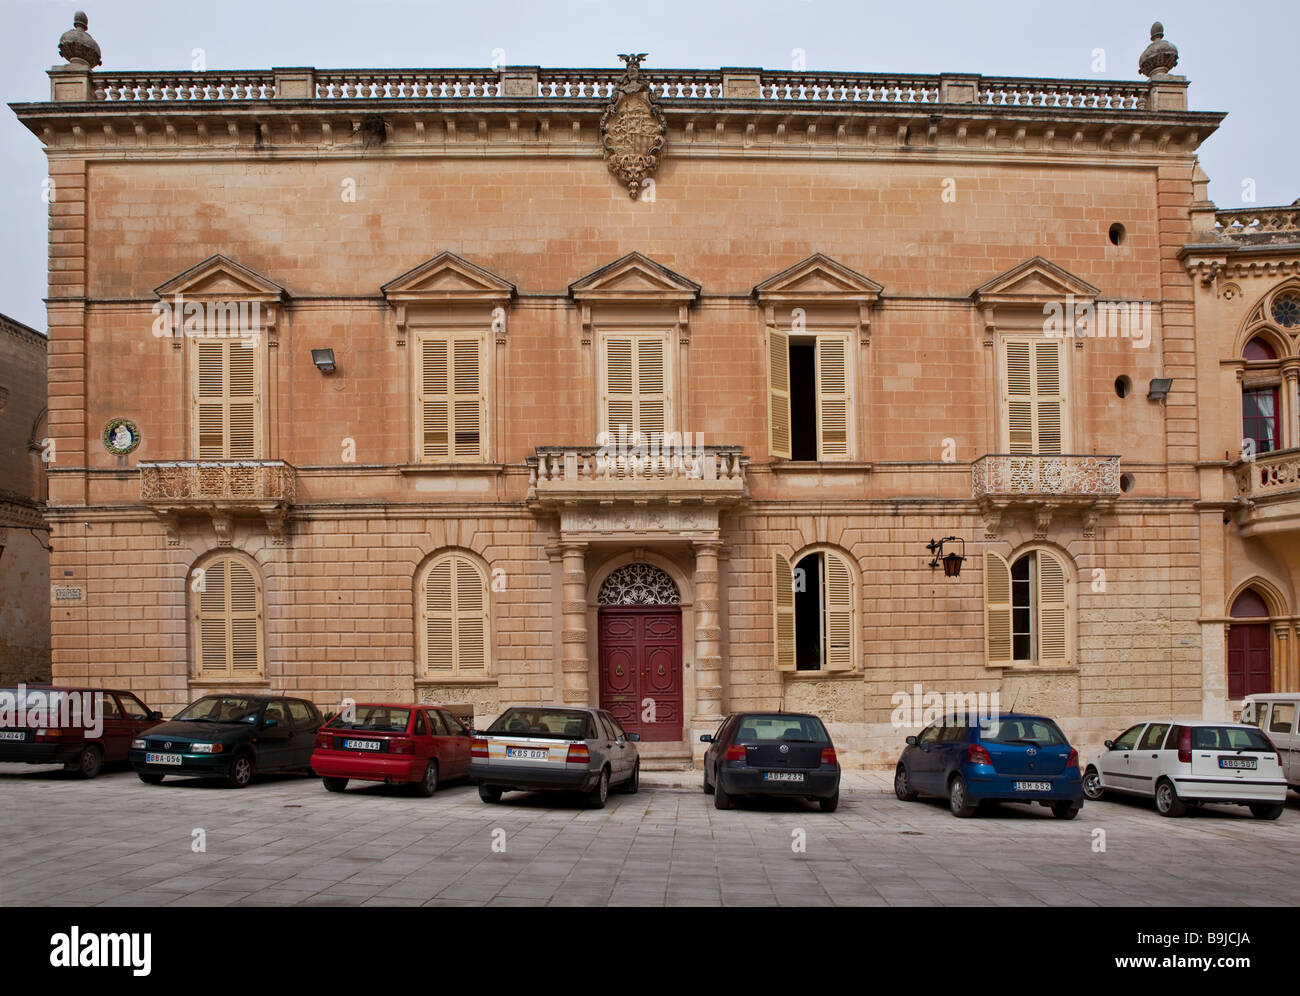 Ancien bâtiment sur la Place St Paul, Mdina, Malte, Europe Banque D'Images